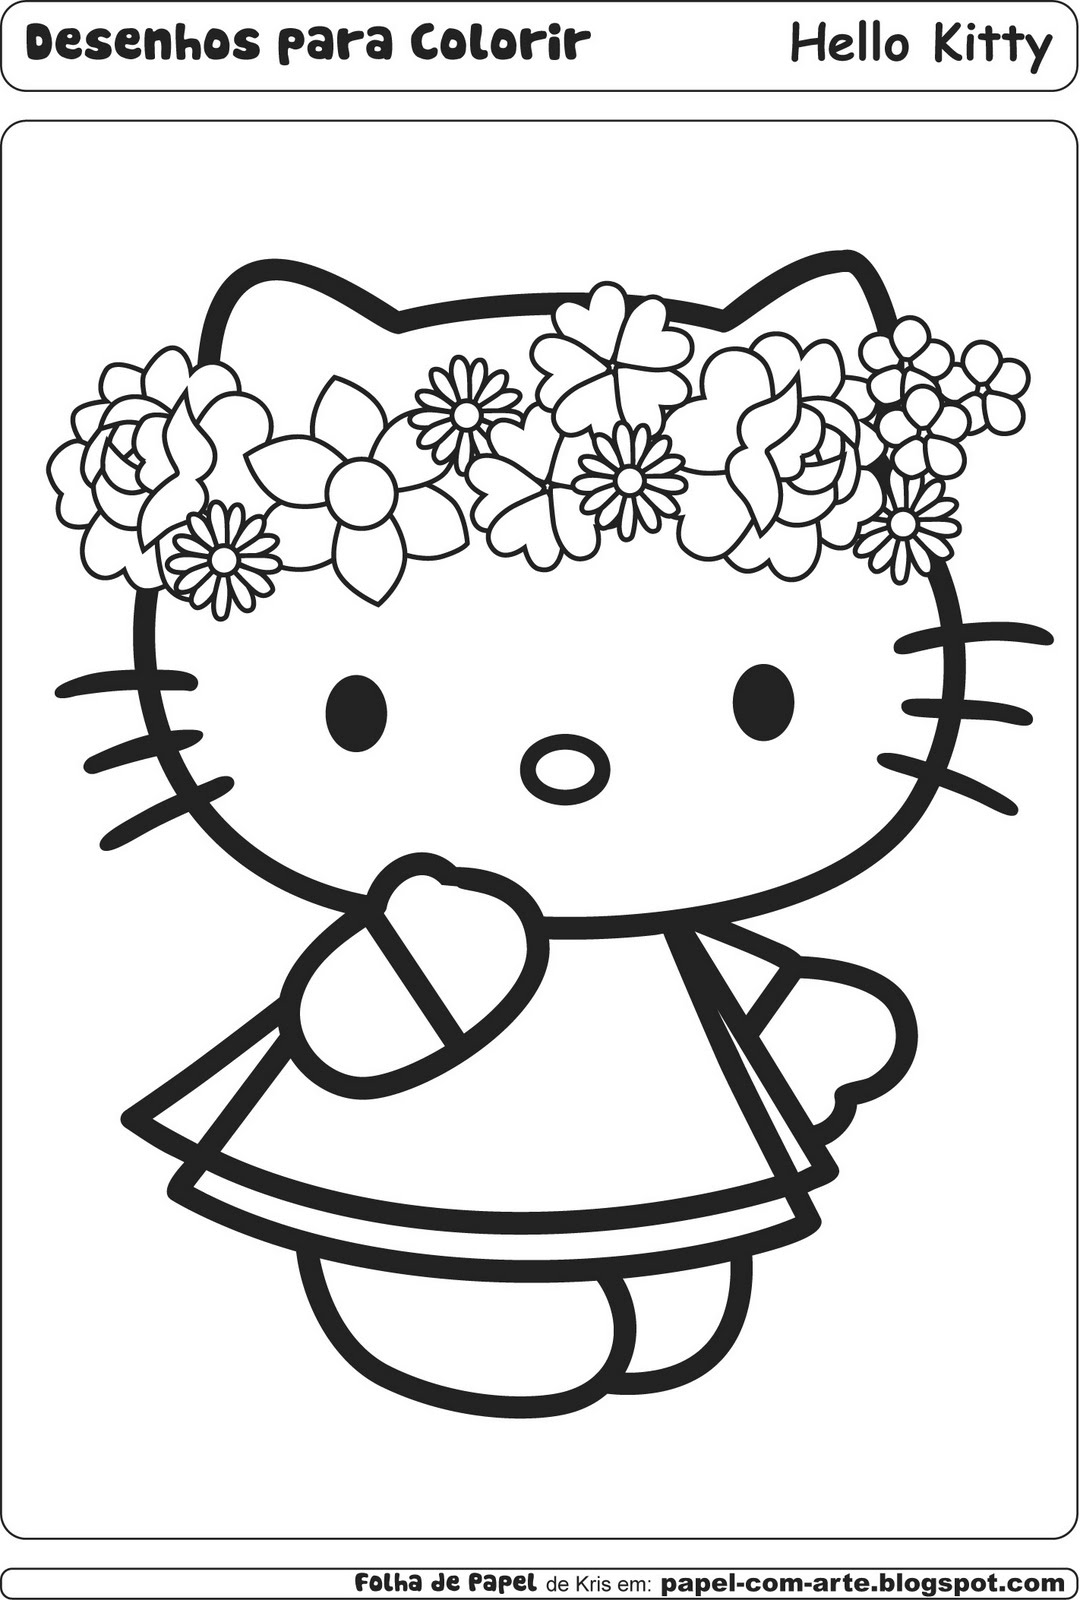 Desenhos Para Colorir E Imprimir Da Hello Kitty